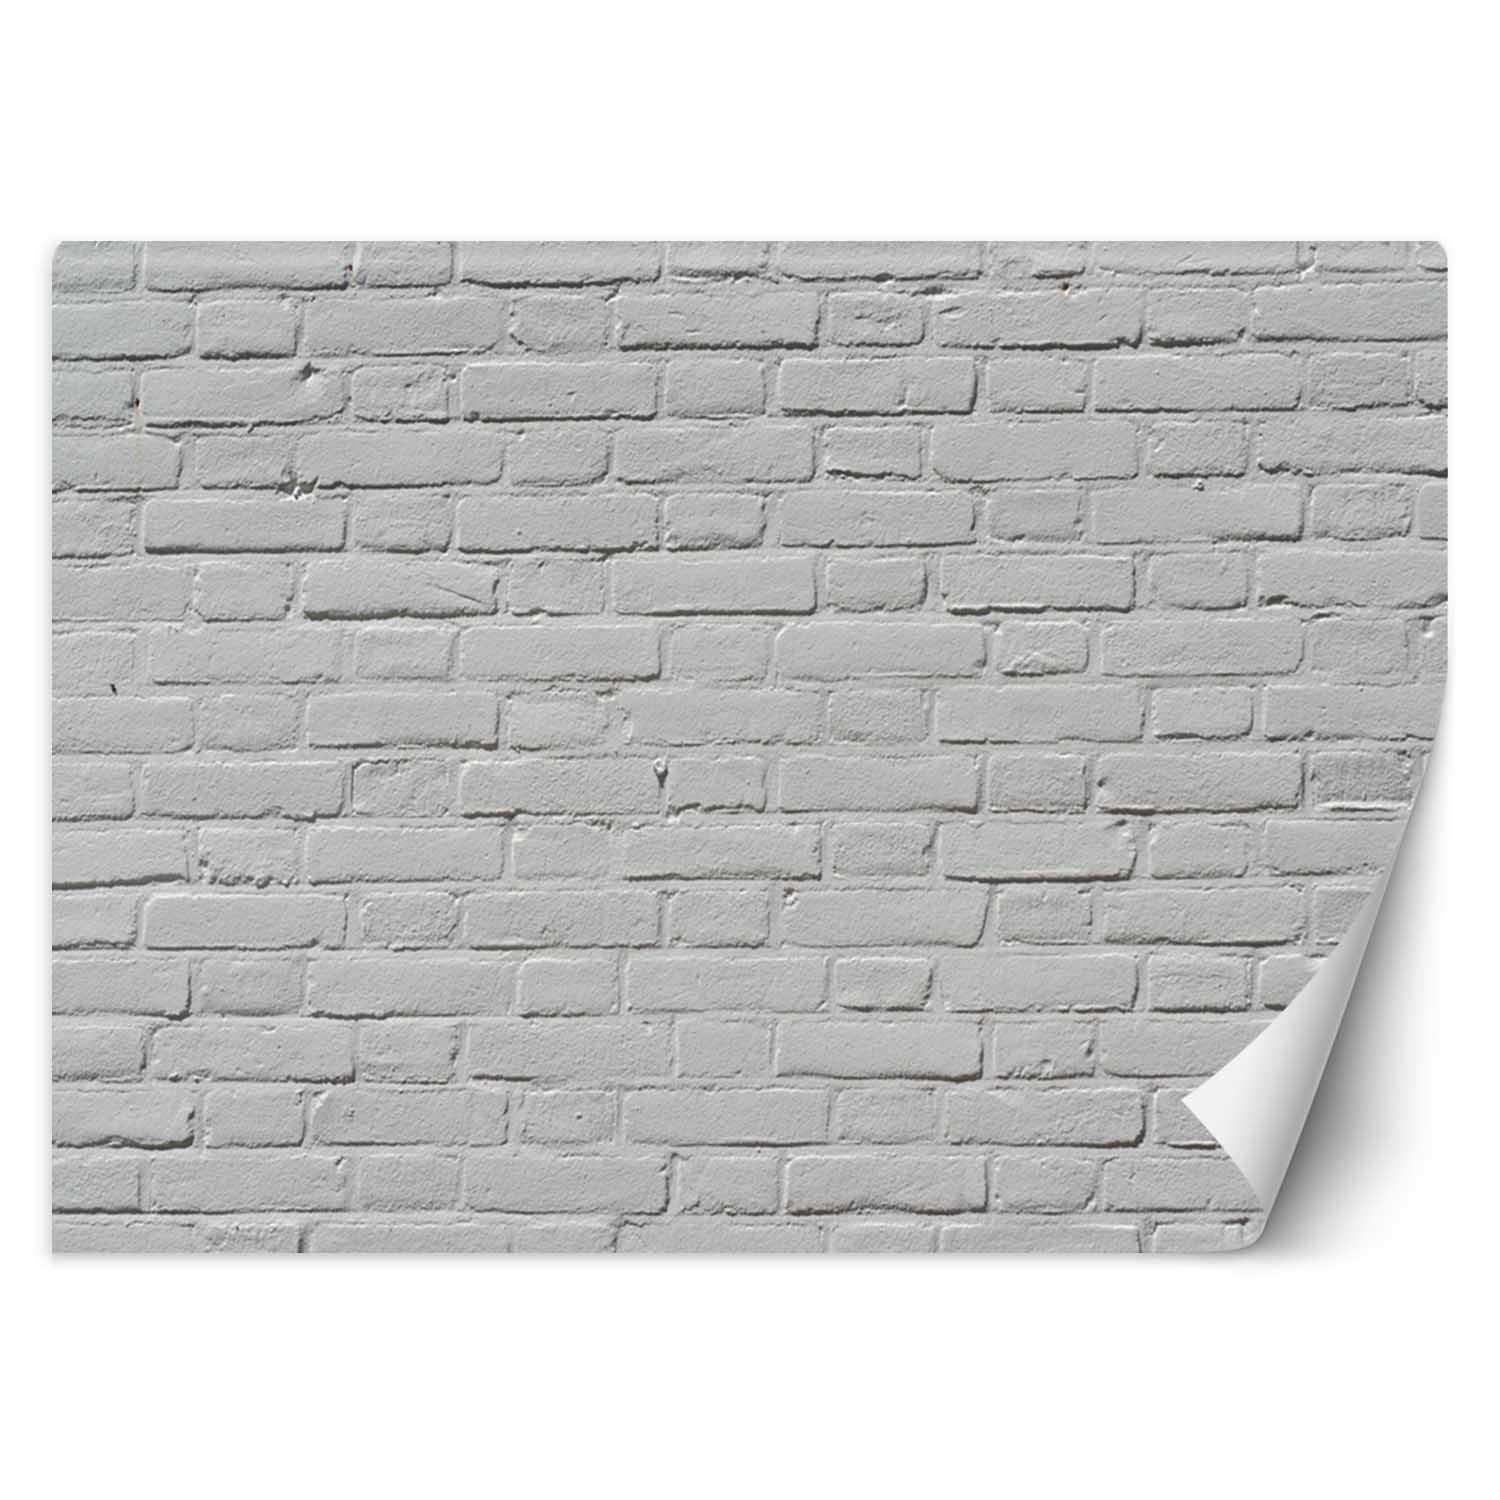 Trend24 – Behang – Witte Bakstenen Muur – Vliesbehang – Behang Woonkamer – Fotobehang – 450x315x2 cm – Incl. behanglijm